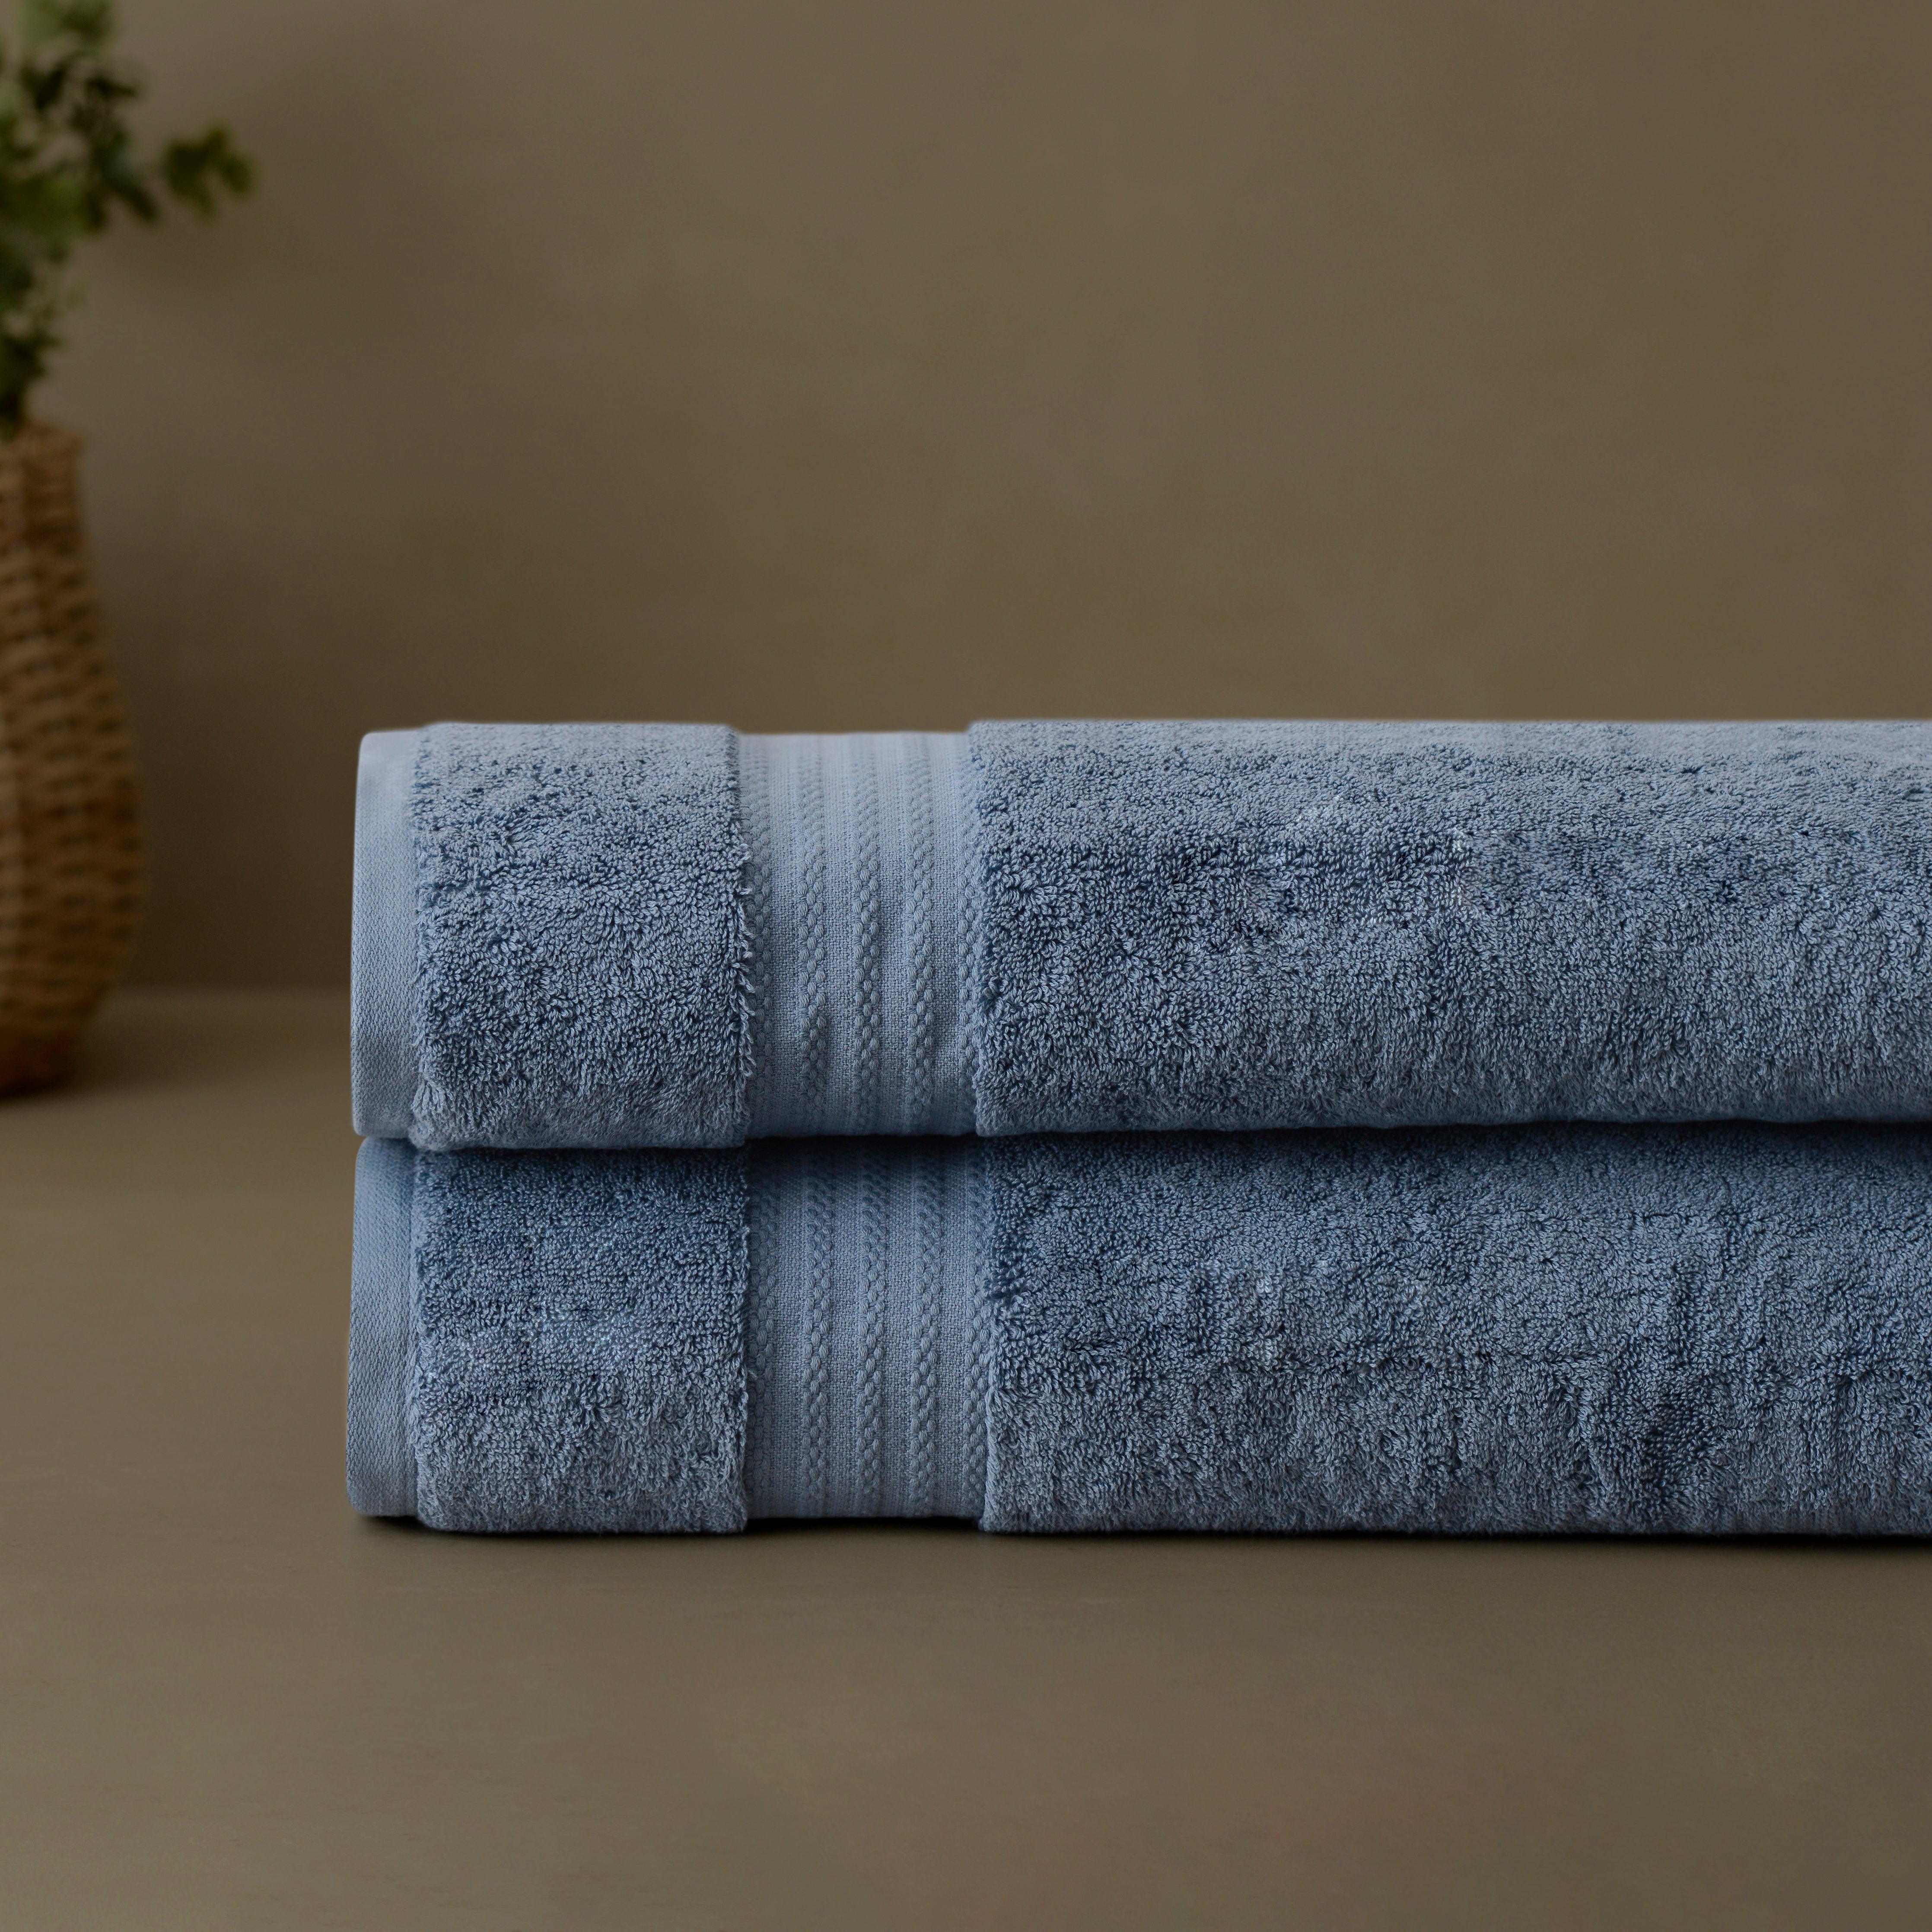 Ariv Collection 700 gsm premium bath towels set of 4 - 100% cotton